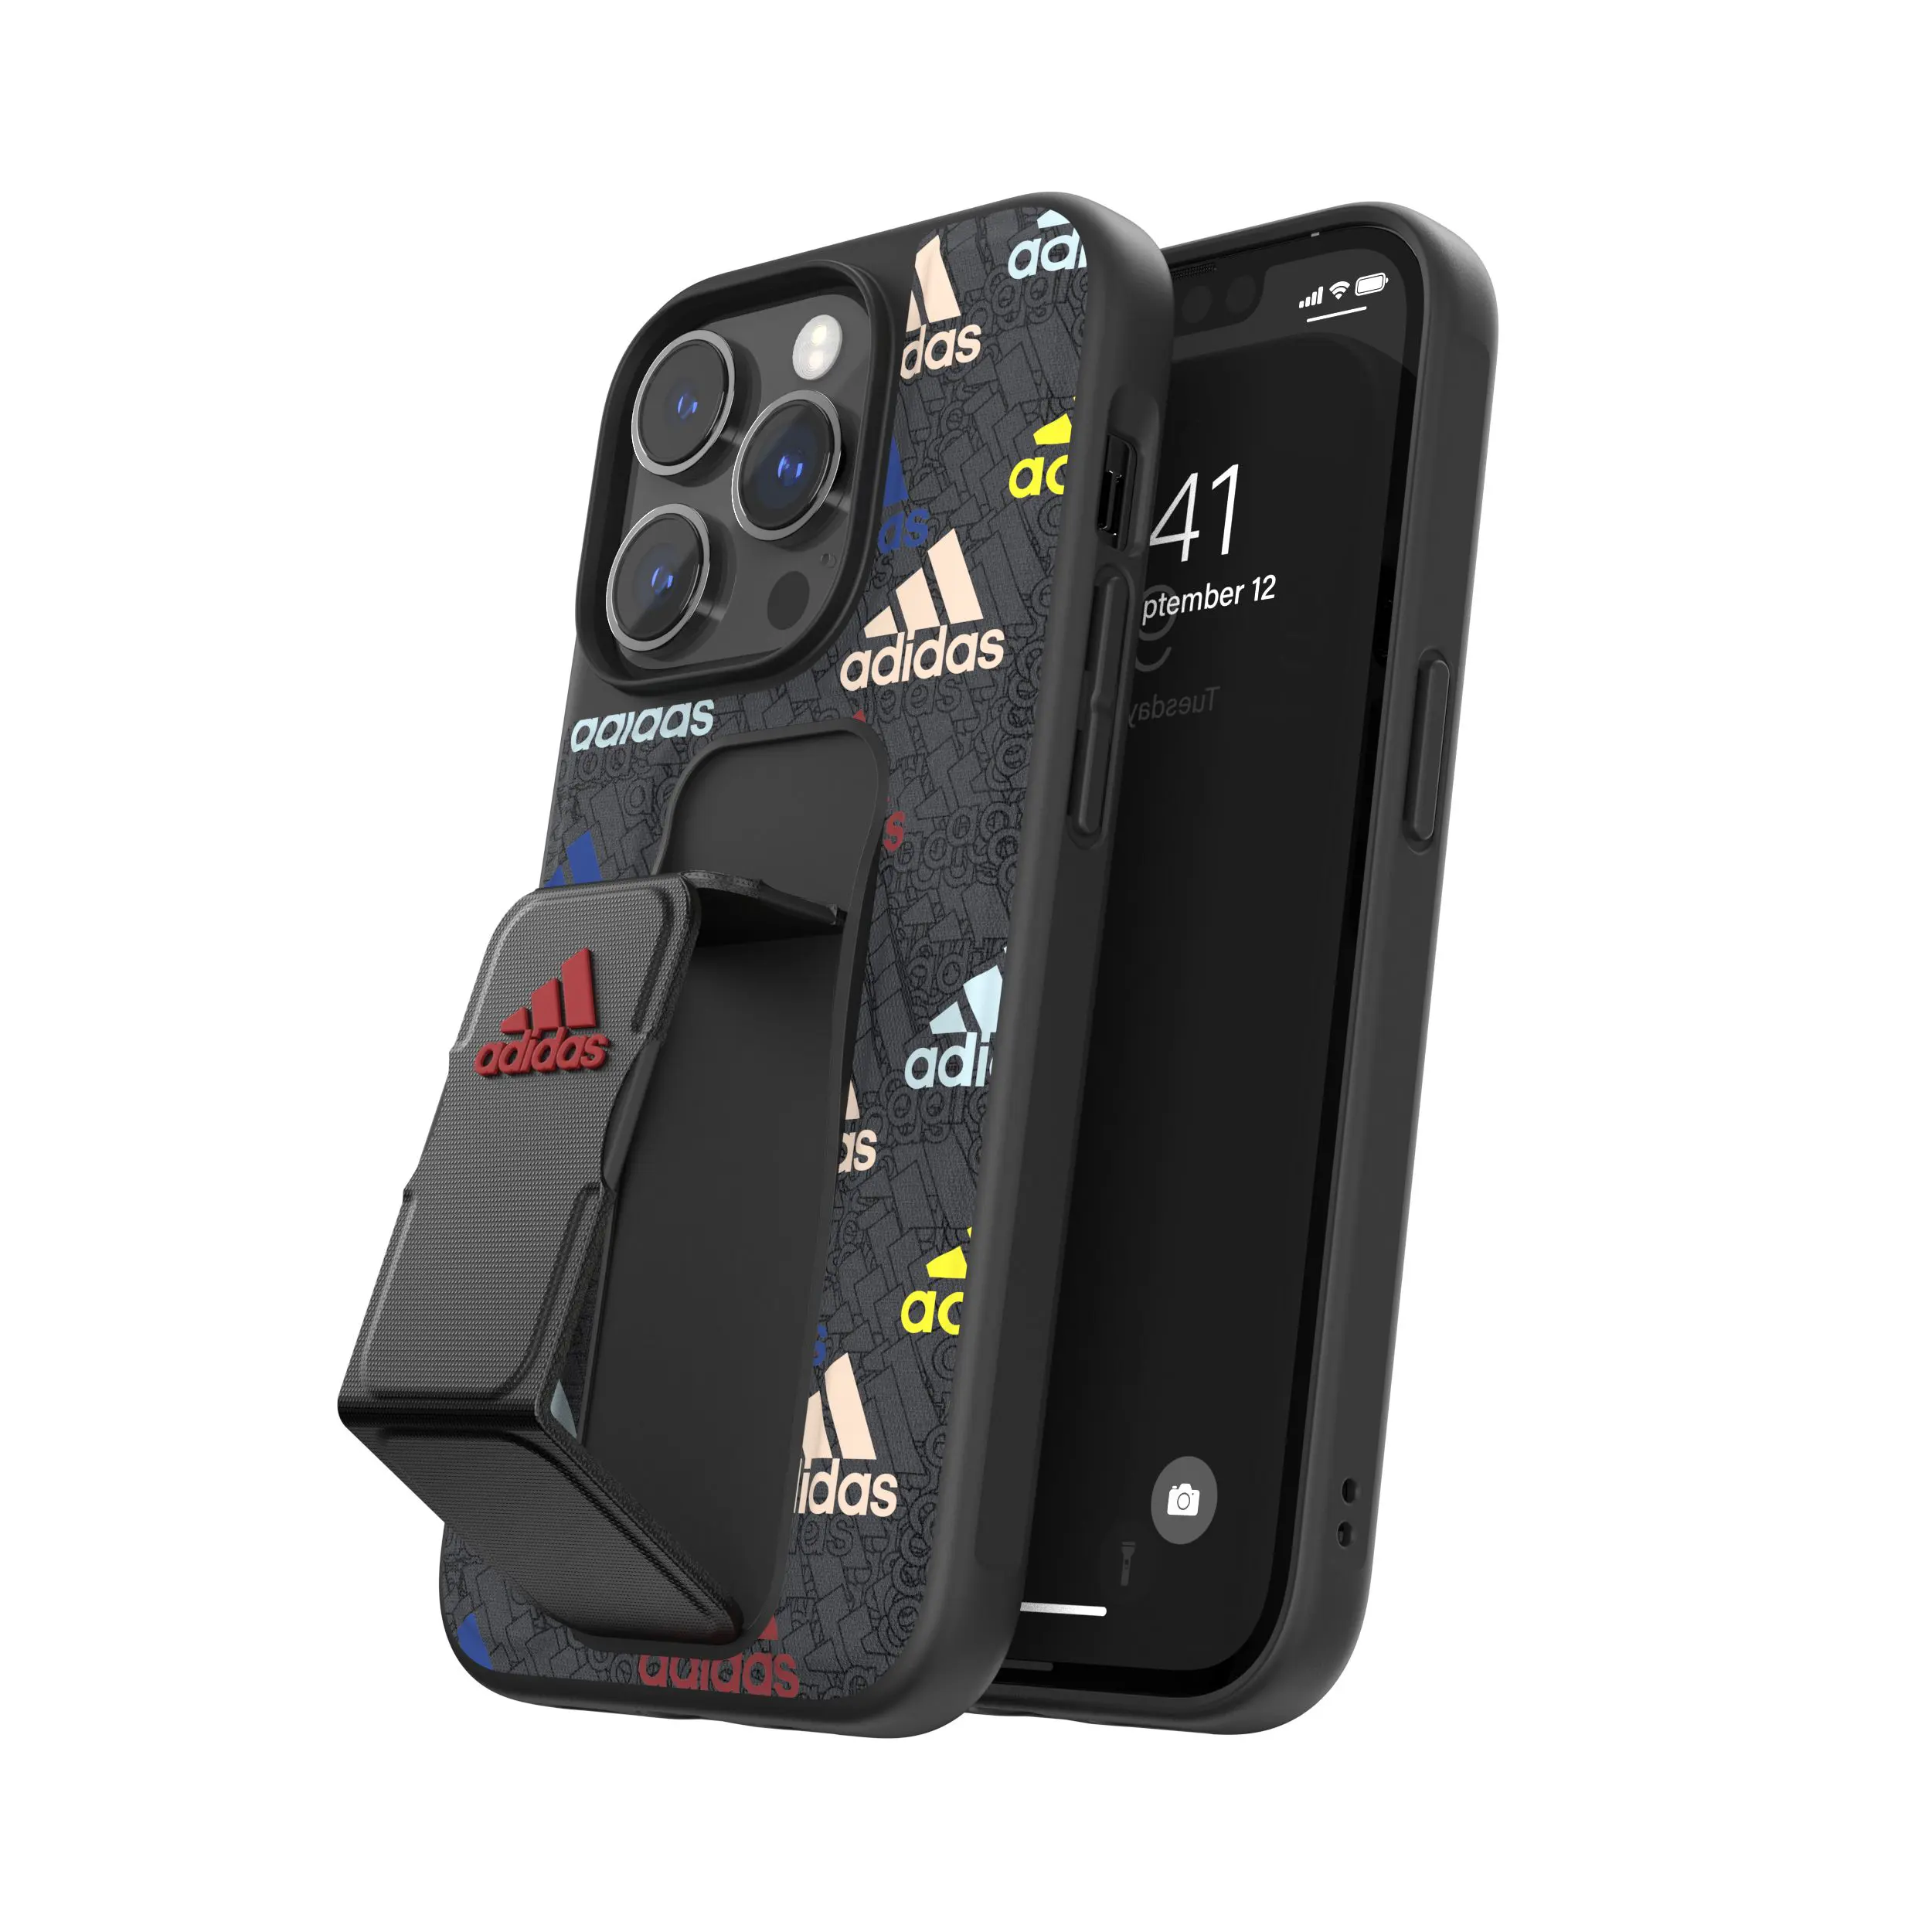 Adidas รุ่น Grip Case - เคส iPhone 14 Pro - สี Black/Colourful